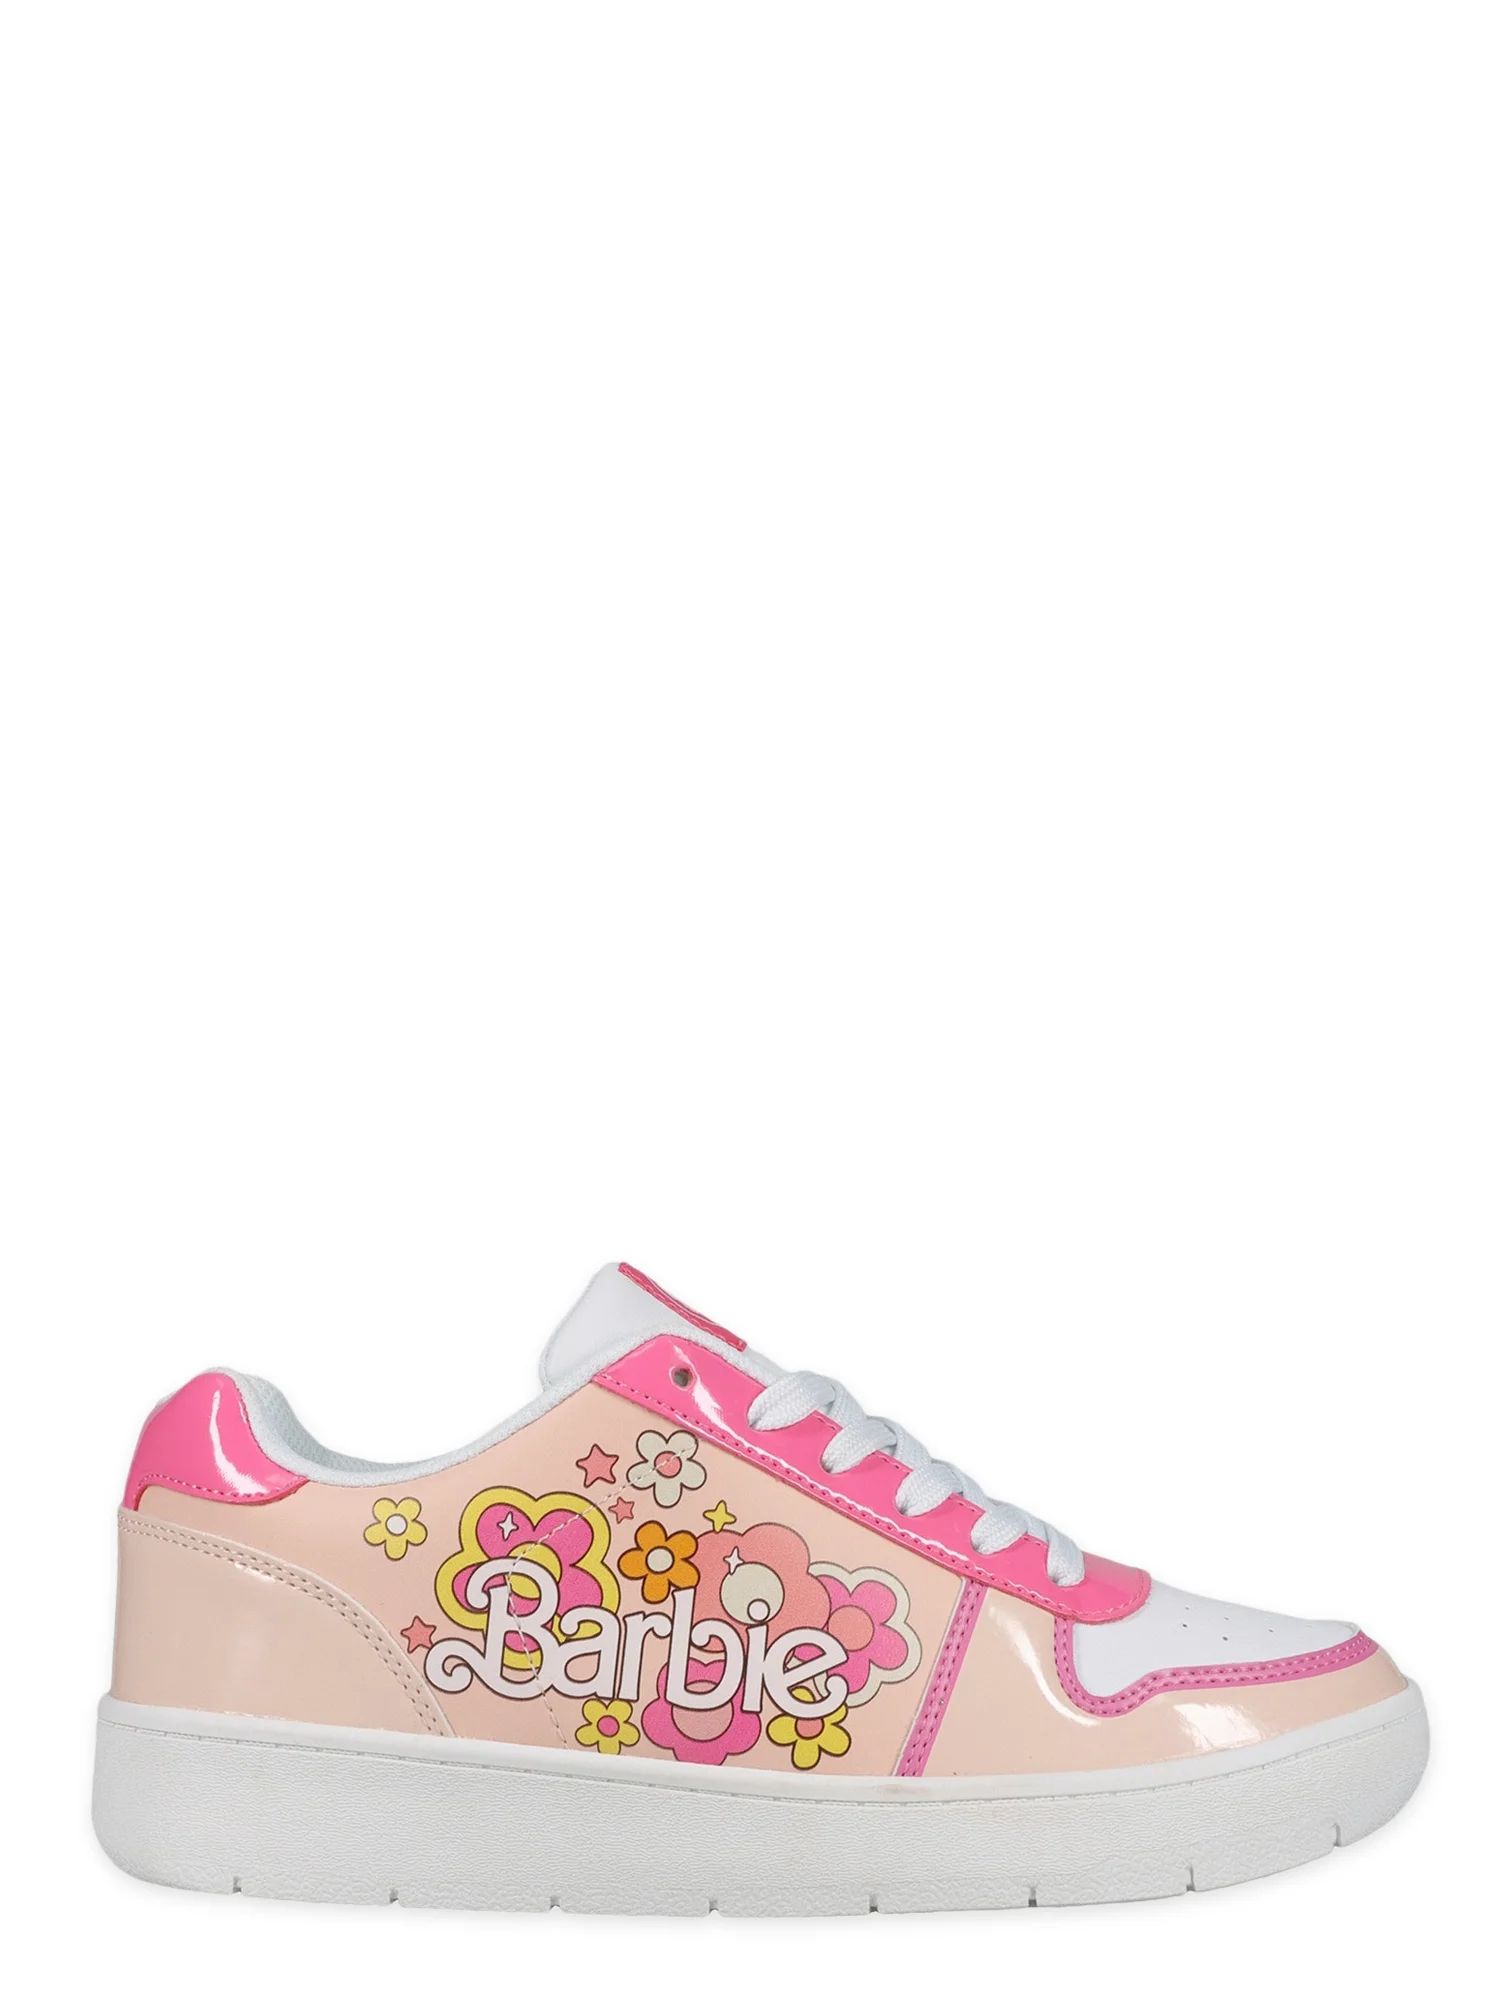 Women's Barbie by Mattel Pink Casual Court Sneaker, Whole Sizes 6-11, Regular Width | Walmart (US)